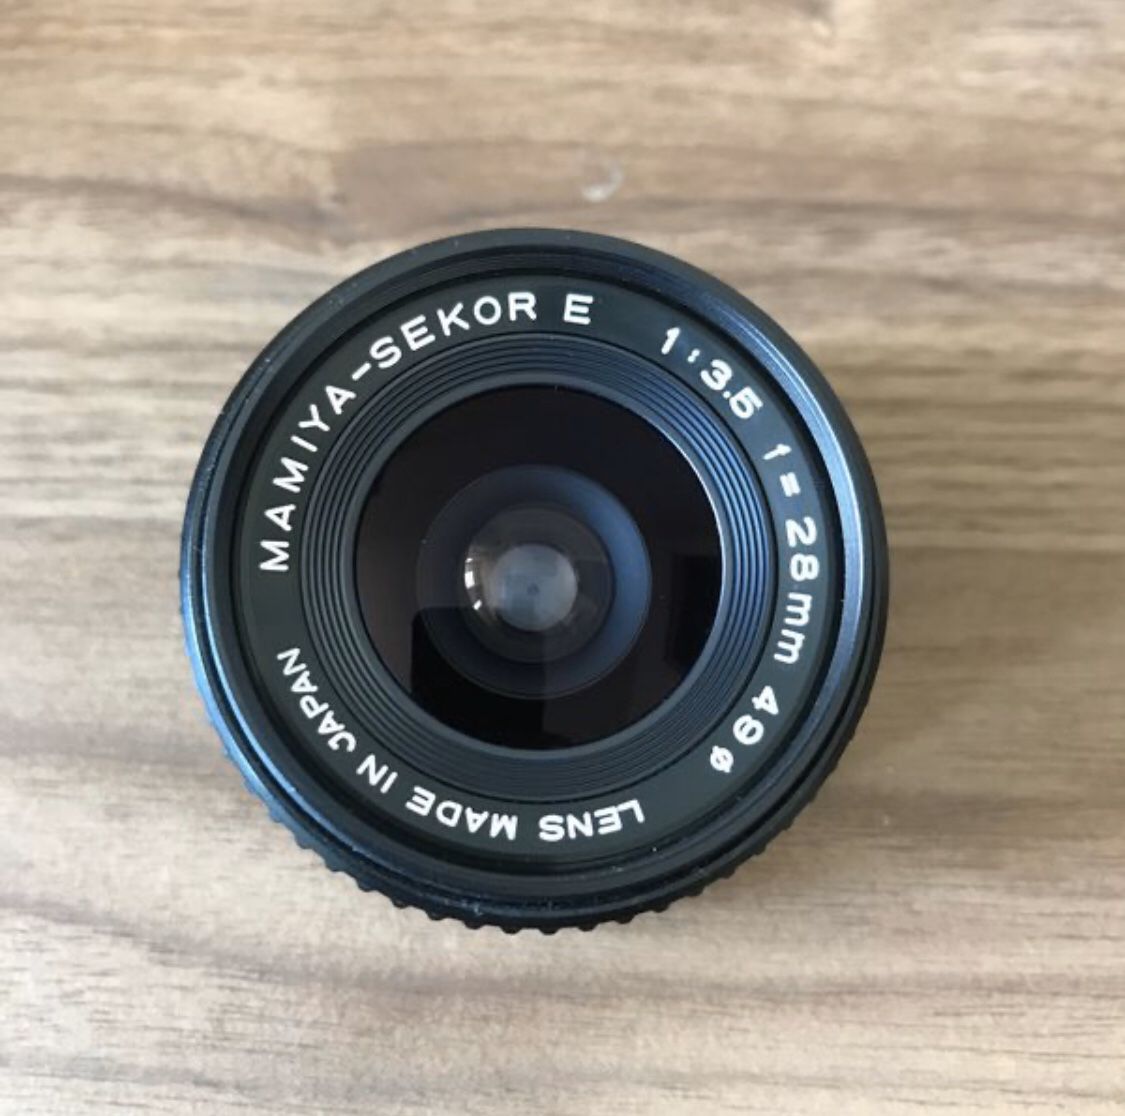 Set of 2 Mamiya-Sekor Camera Lenses: 28mm f3.5 and 50mm f2.0